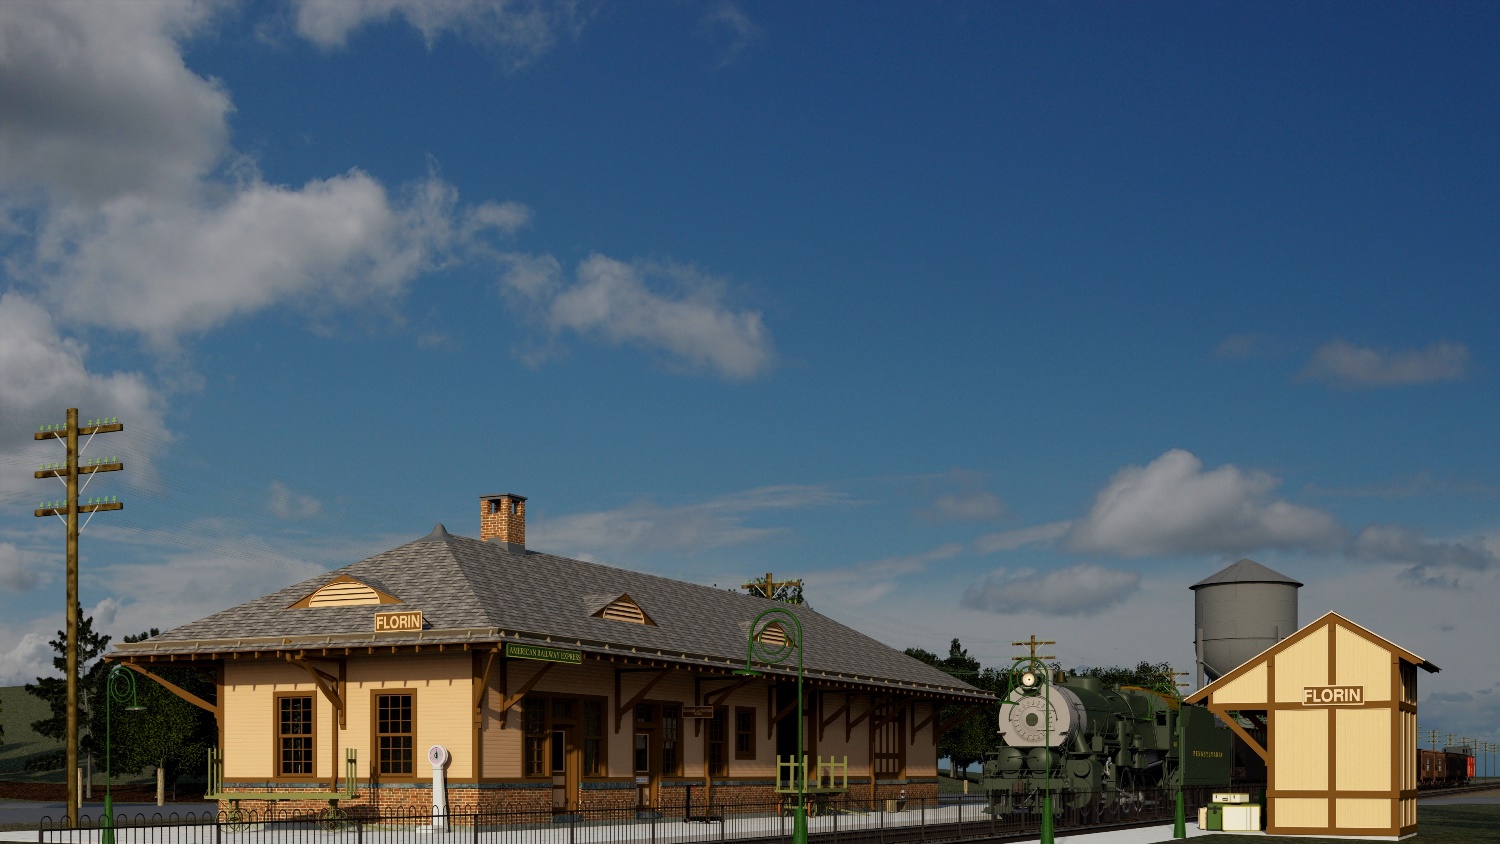 Florin Station